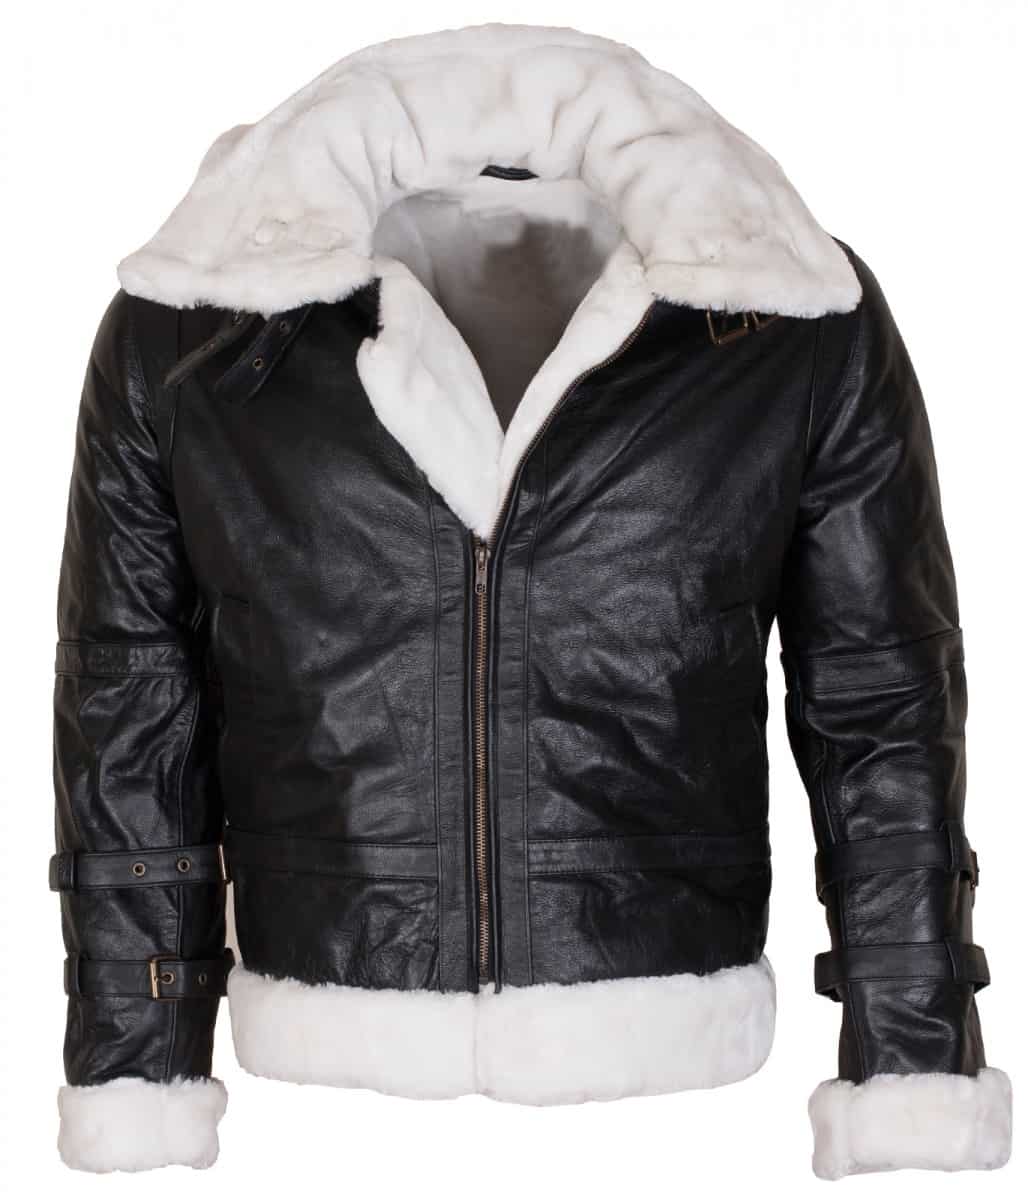 B3 Bomber Leather Jacket for Men | B3 Fur Lined Bomber Jacket